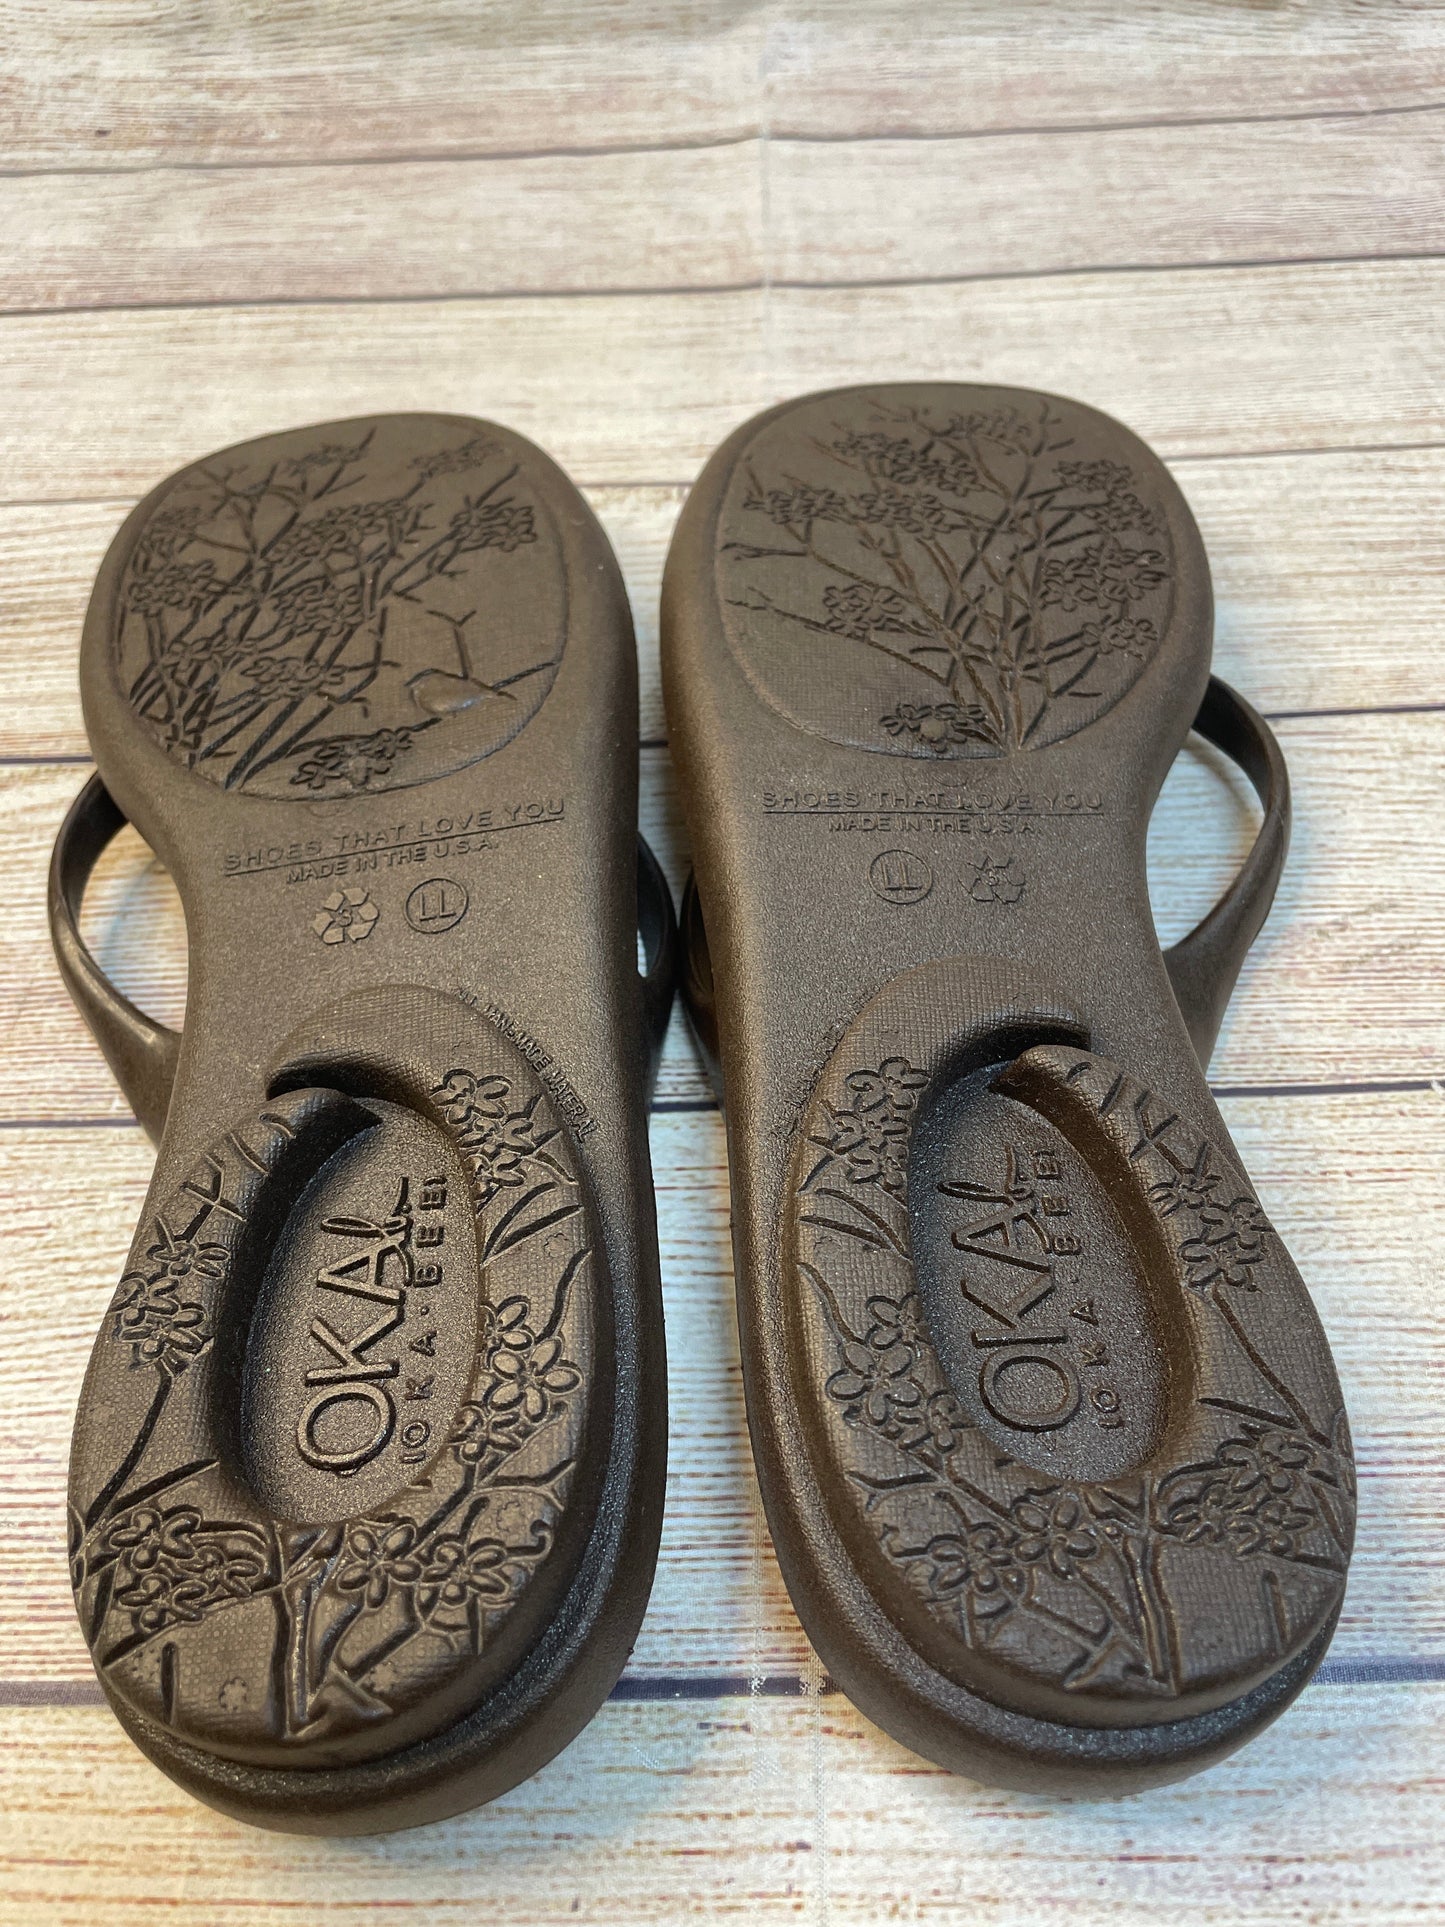 Sandals Flip Flops By Cmc  Size: 9.5